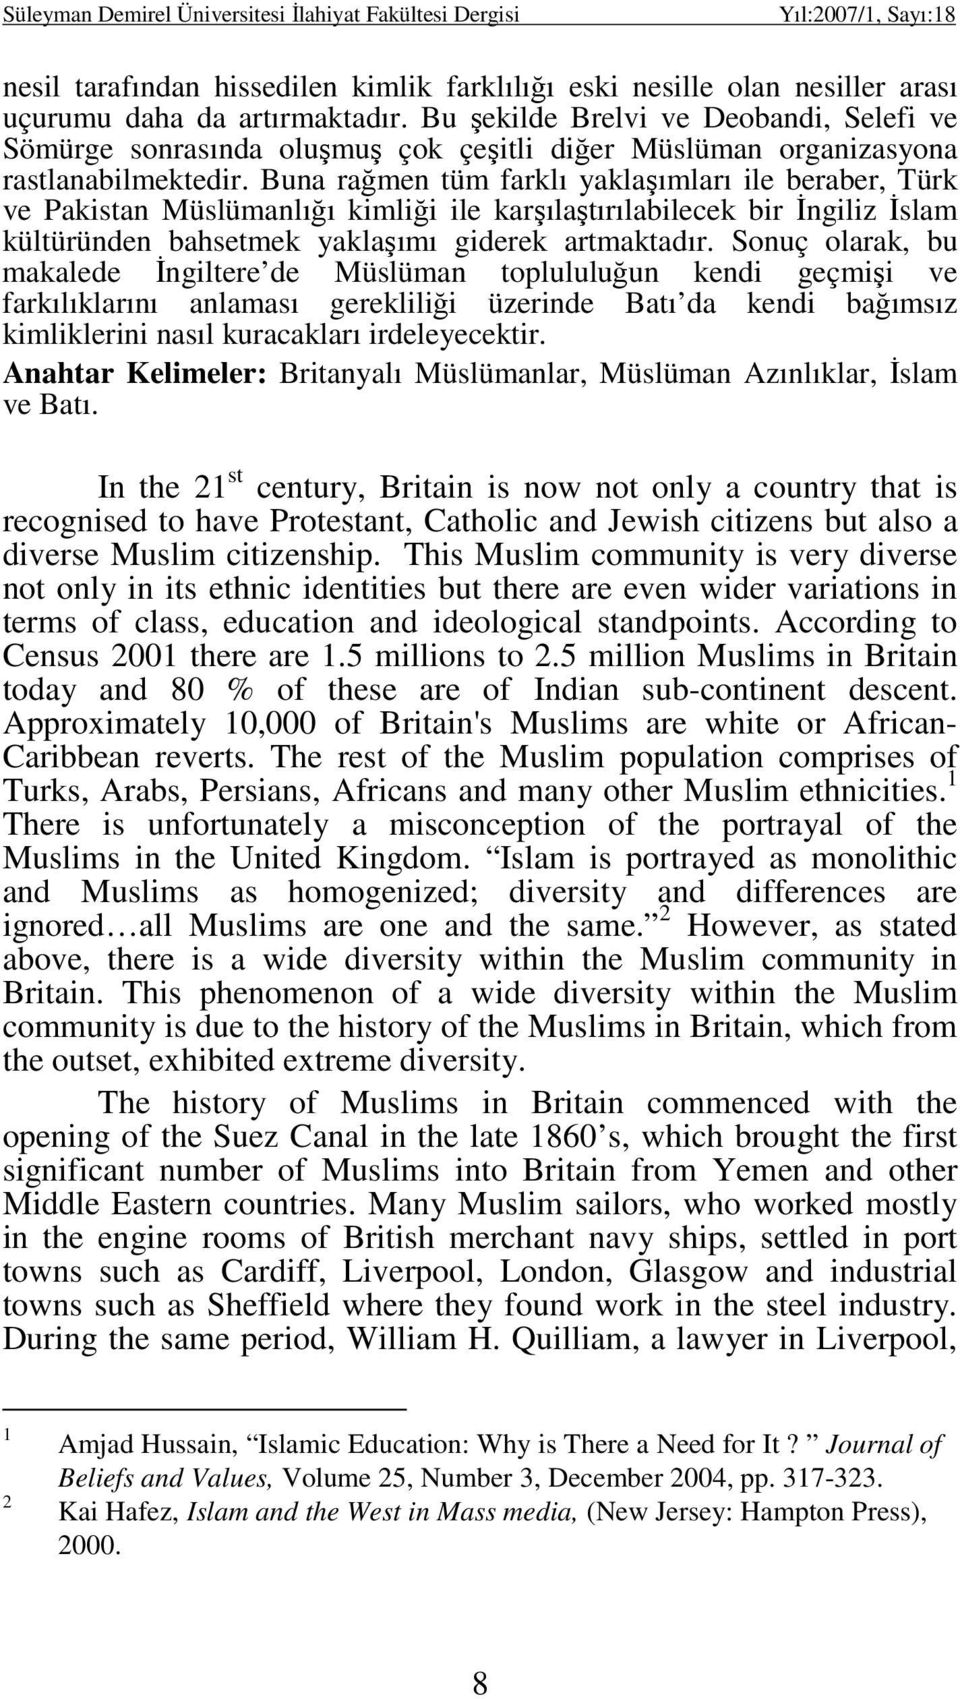 Buna rağmen tüm farklı yaklaşımları ile beraber, Türk ve Pakistan Müslümanlığı kimliği ile karşılaştırılabilecek bir Đngiliz Đslam kültüründen bahsetmek yaklaşımı giderek artmaktadır.